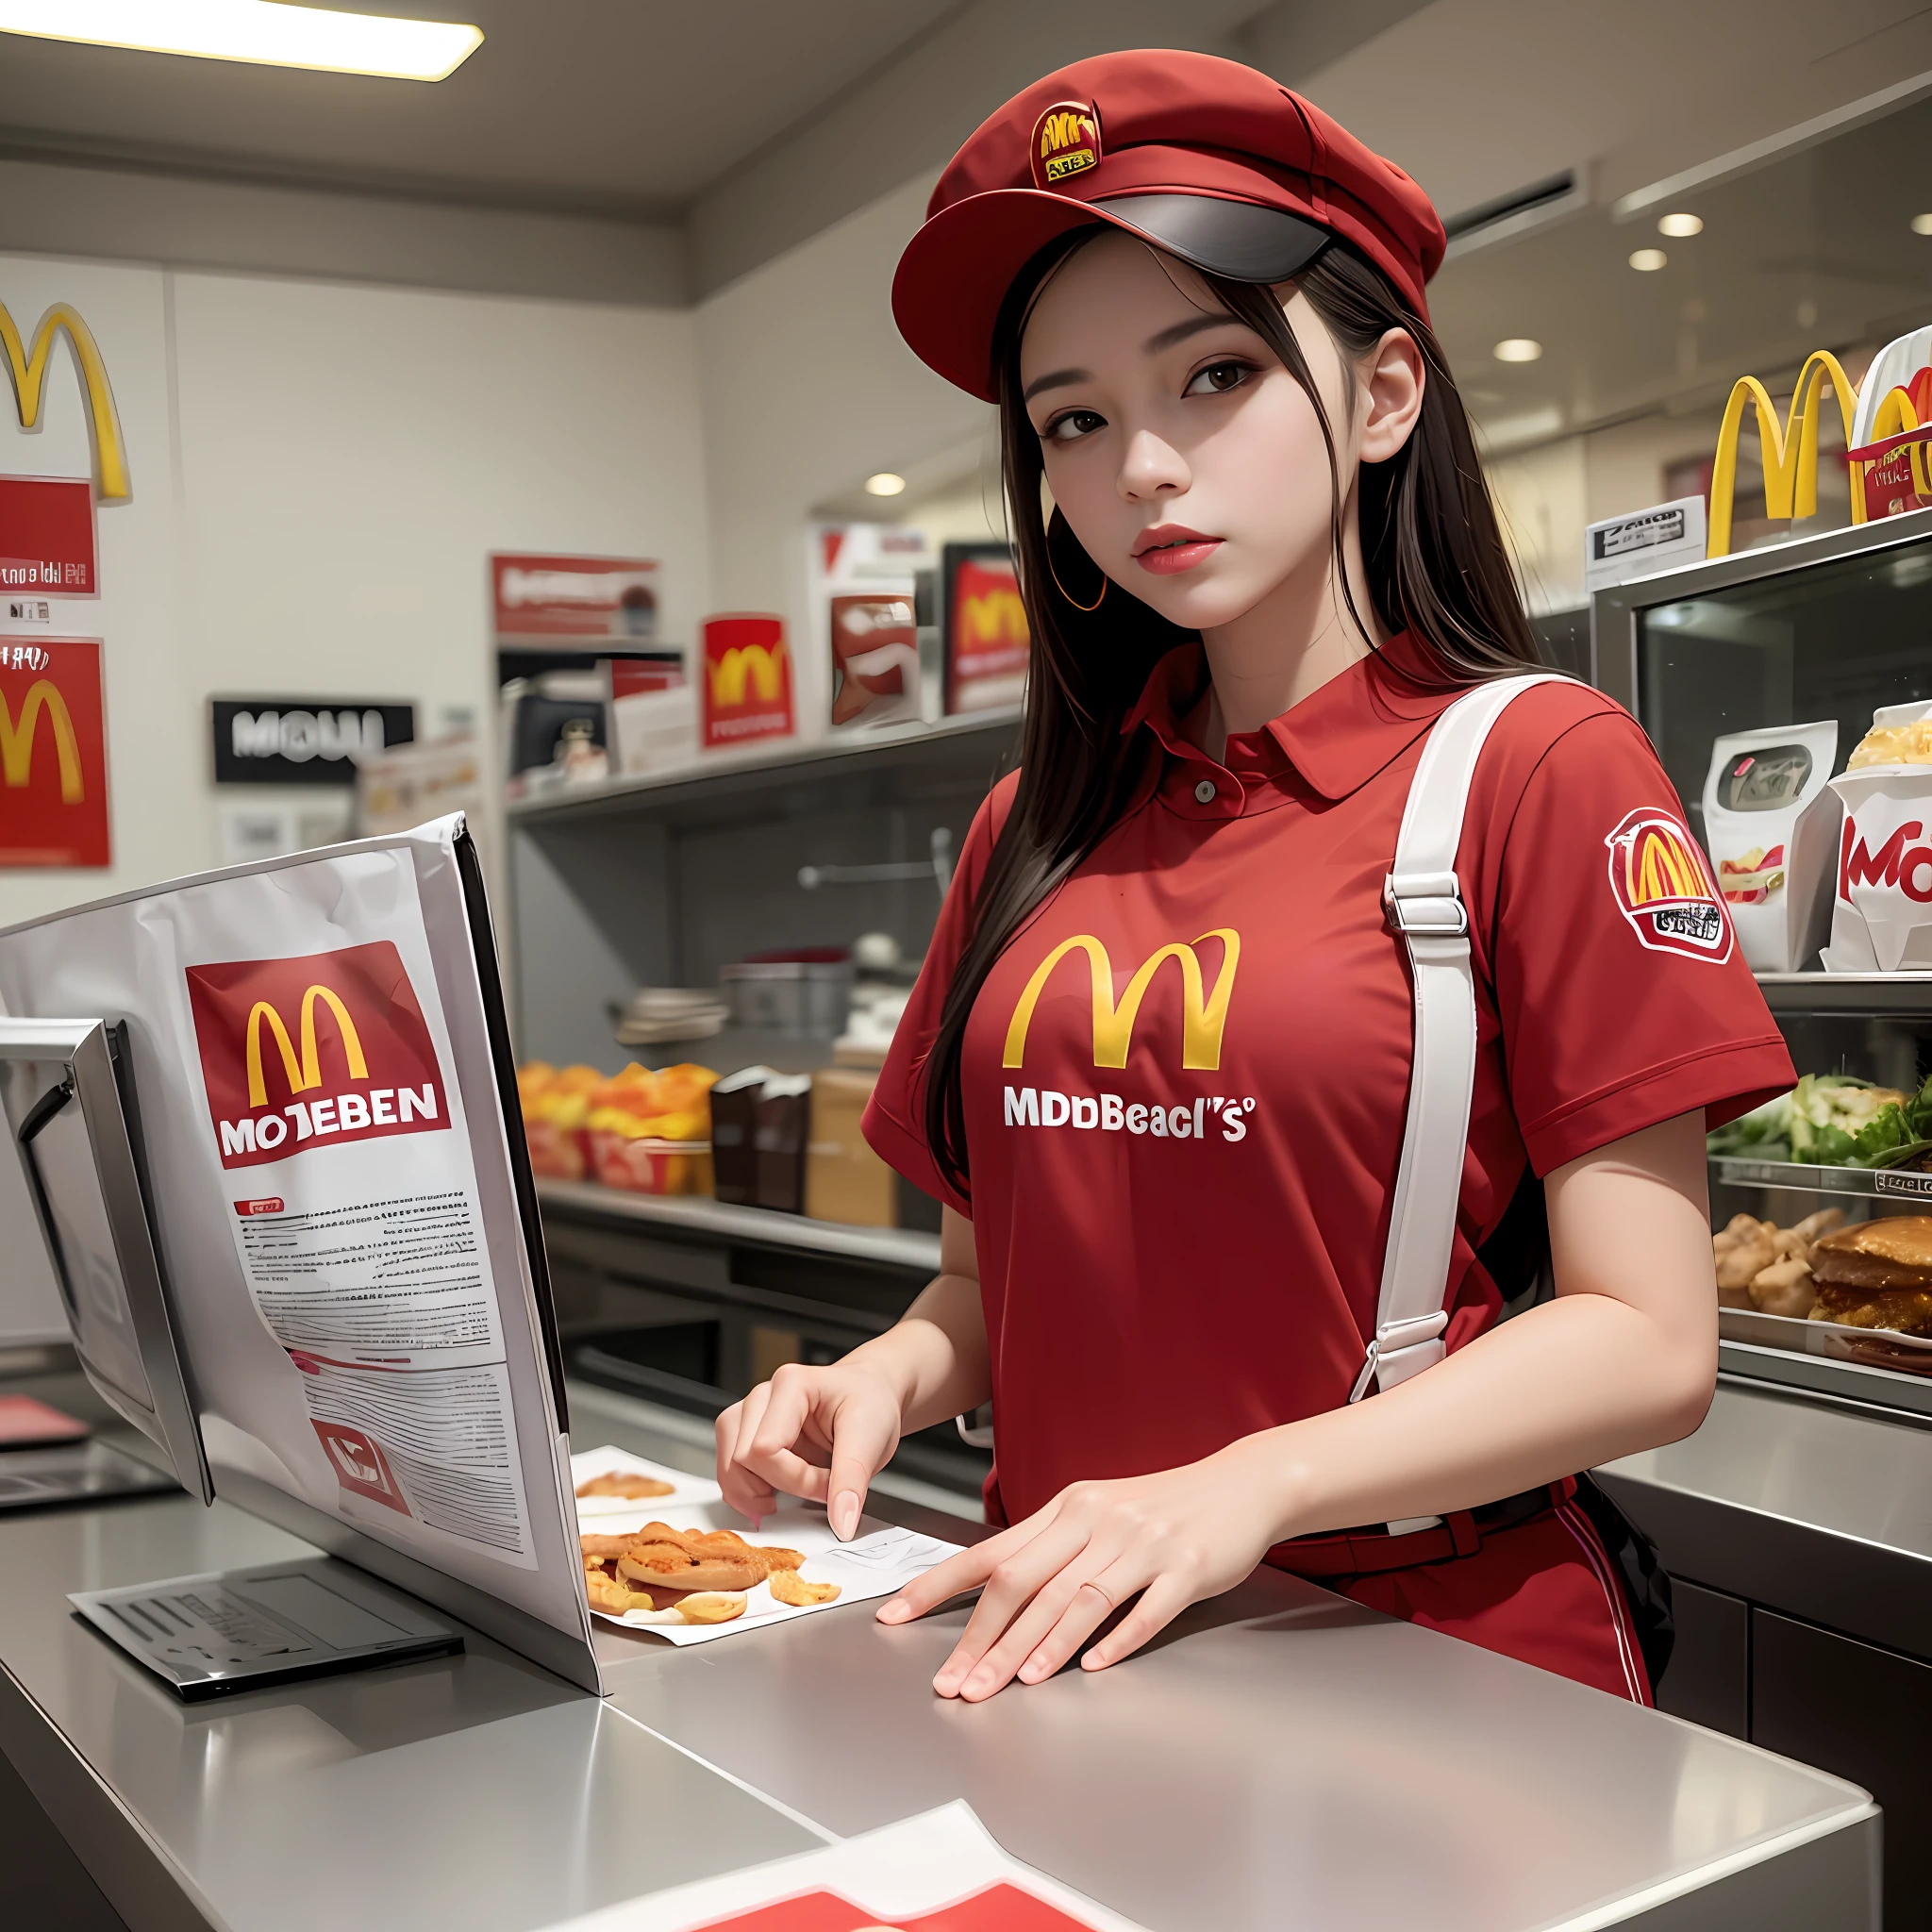 穿着麦当劳制服的墨西哥年轻女子, (红衬衫半解扣), (低腰黑色裤子), 带有麦当劳徽标的红色帽子, 站在麦当劳柜台后面, 下胸部,